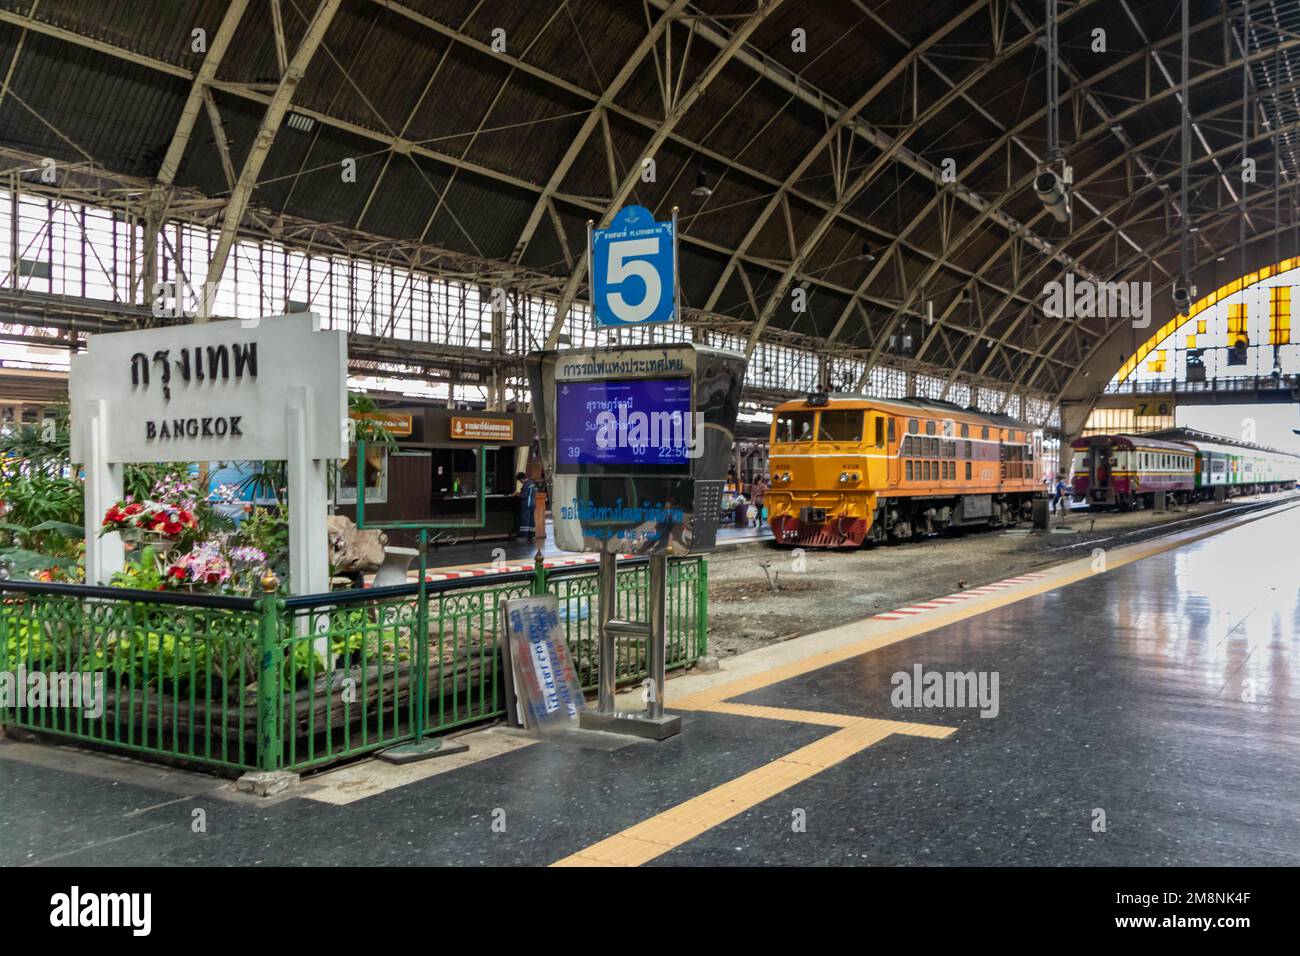 Platform 5 and engine in Hua Lamphong Railway Station, Bangkok, Thailand Stock Photo